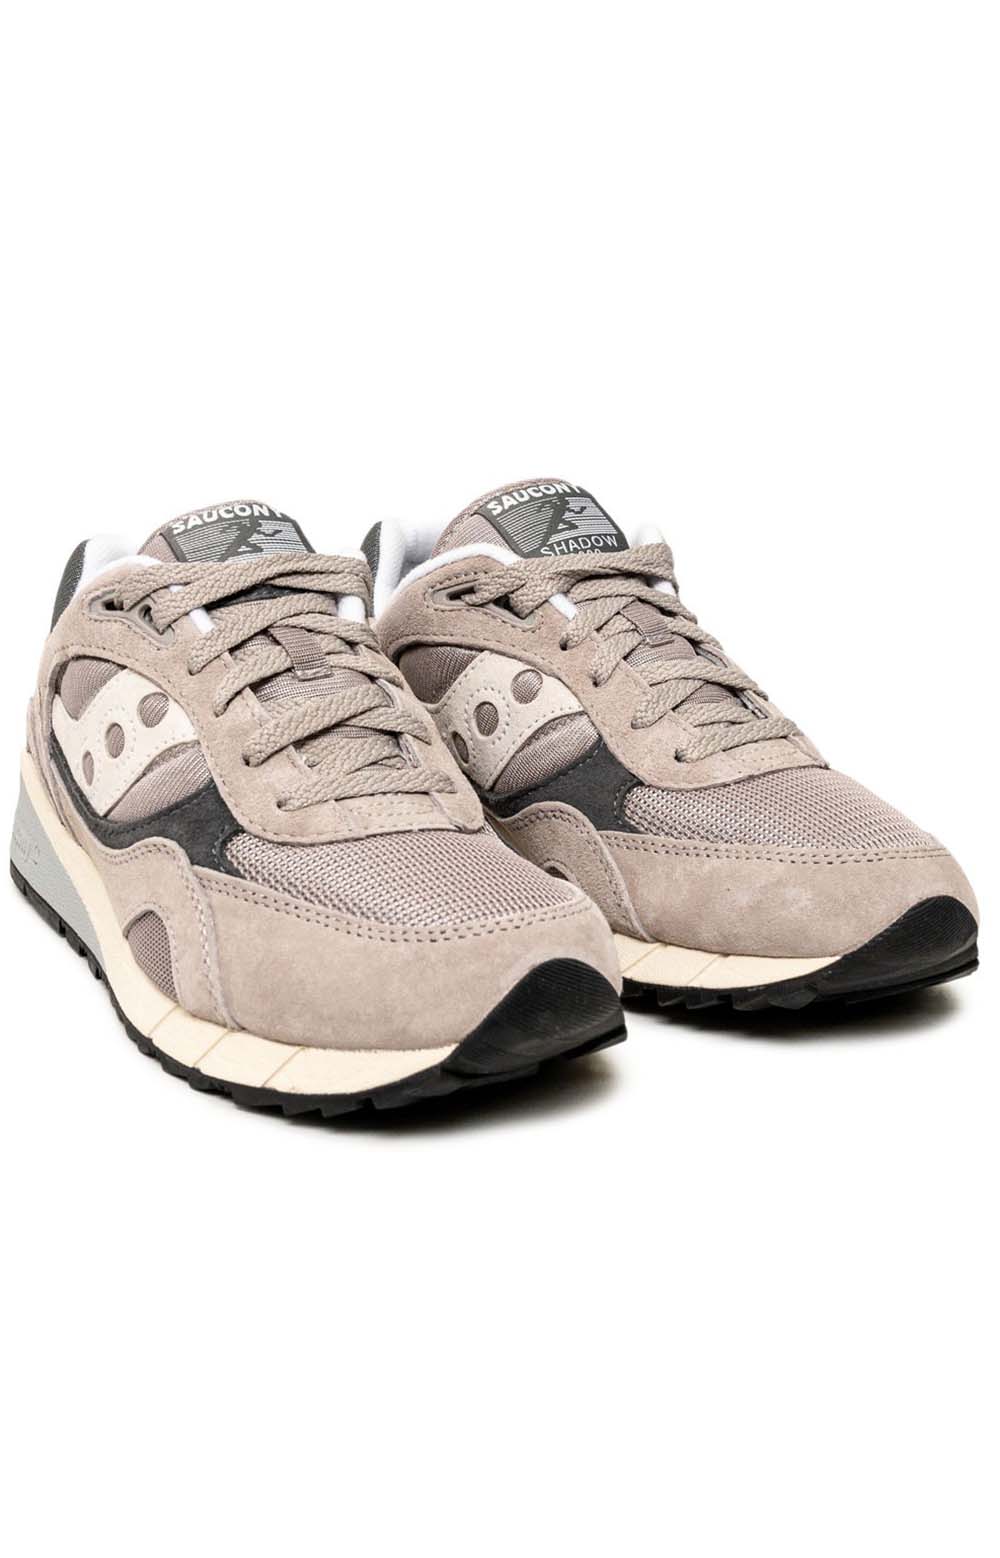 (S70441-46) Shadow 6000 Shoes - Grey/Grey